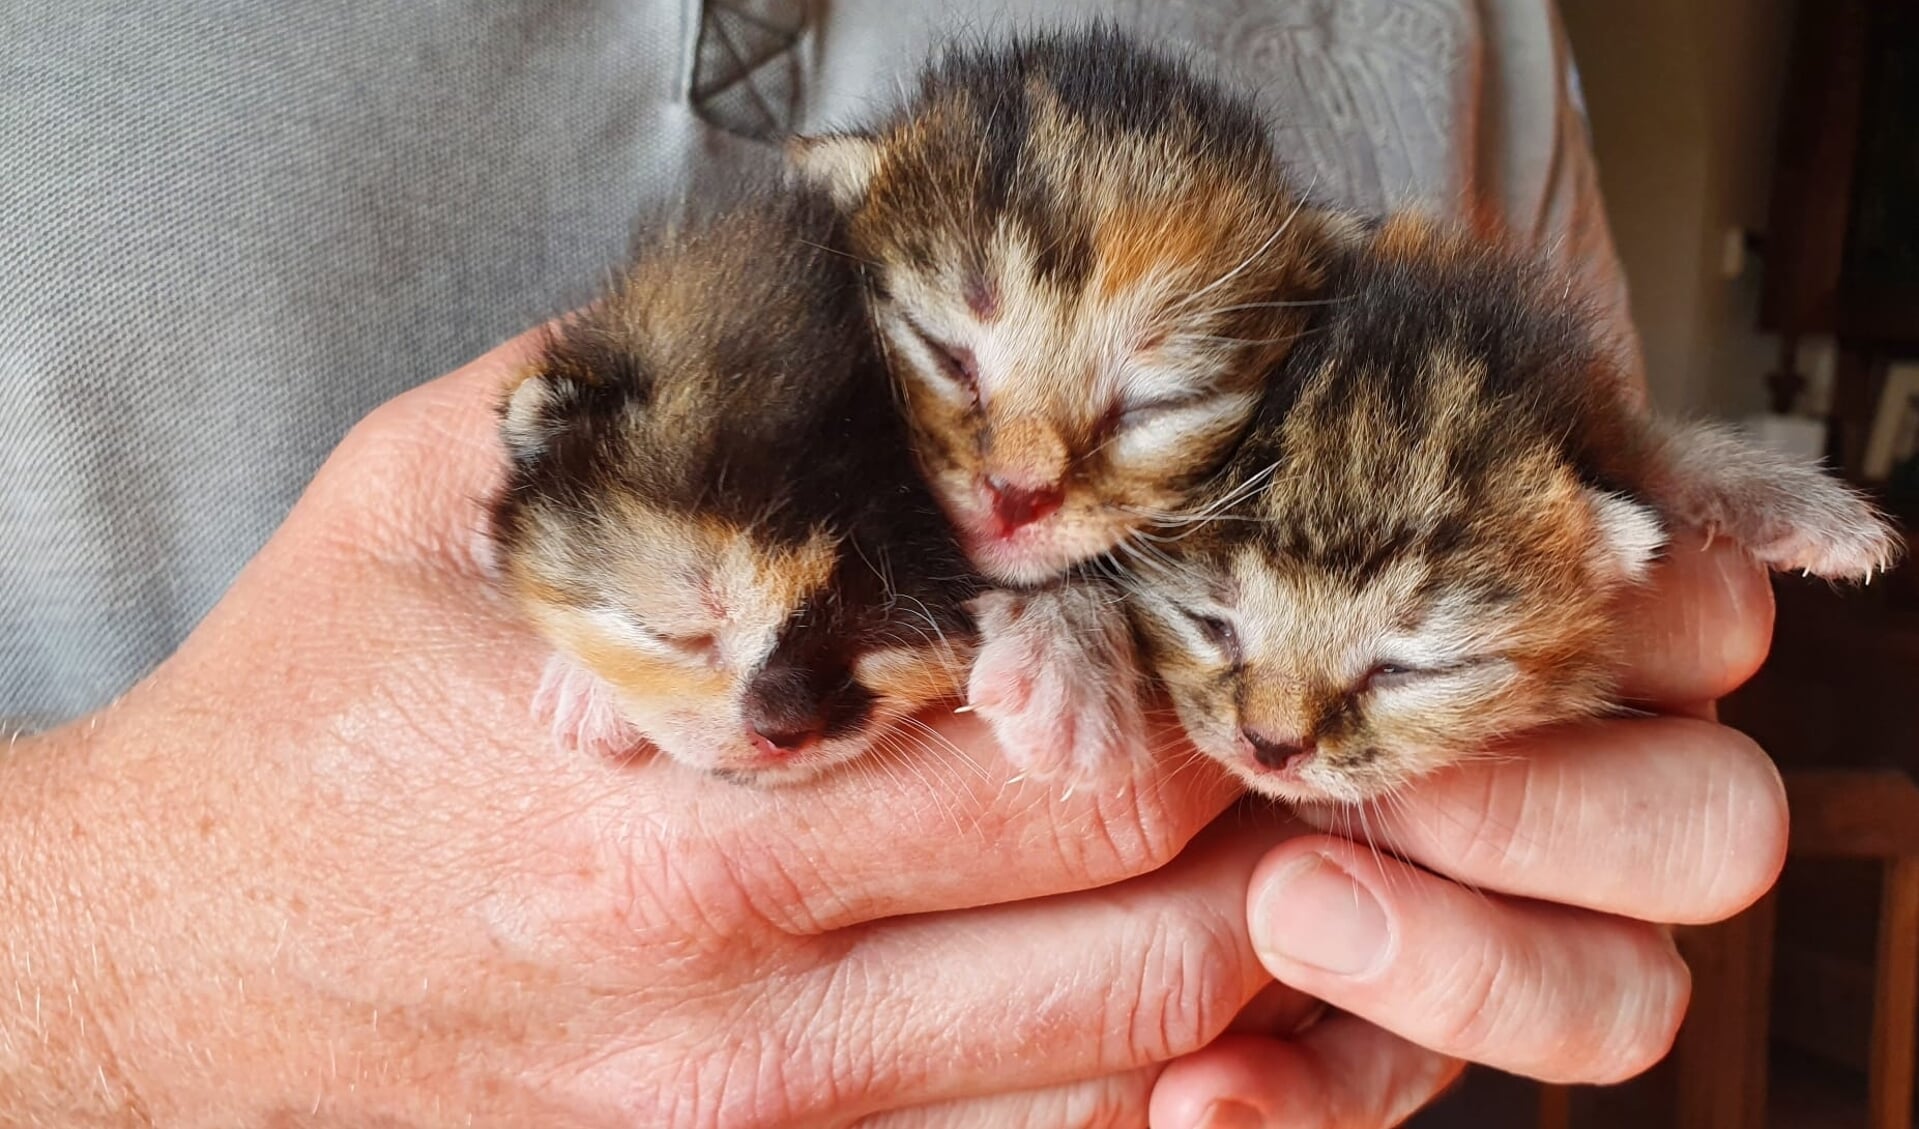 opleiding Afkorten Vleien Pleeggezinnen voor kittens gezocht - Al het nieuws uit Zeeuws Vlaanderen